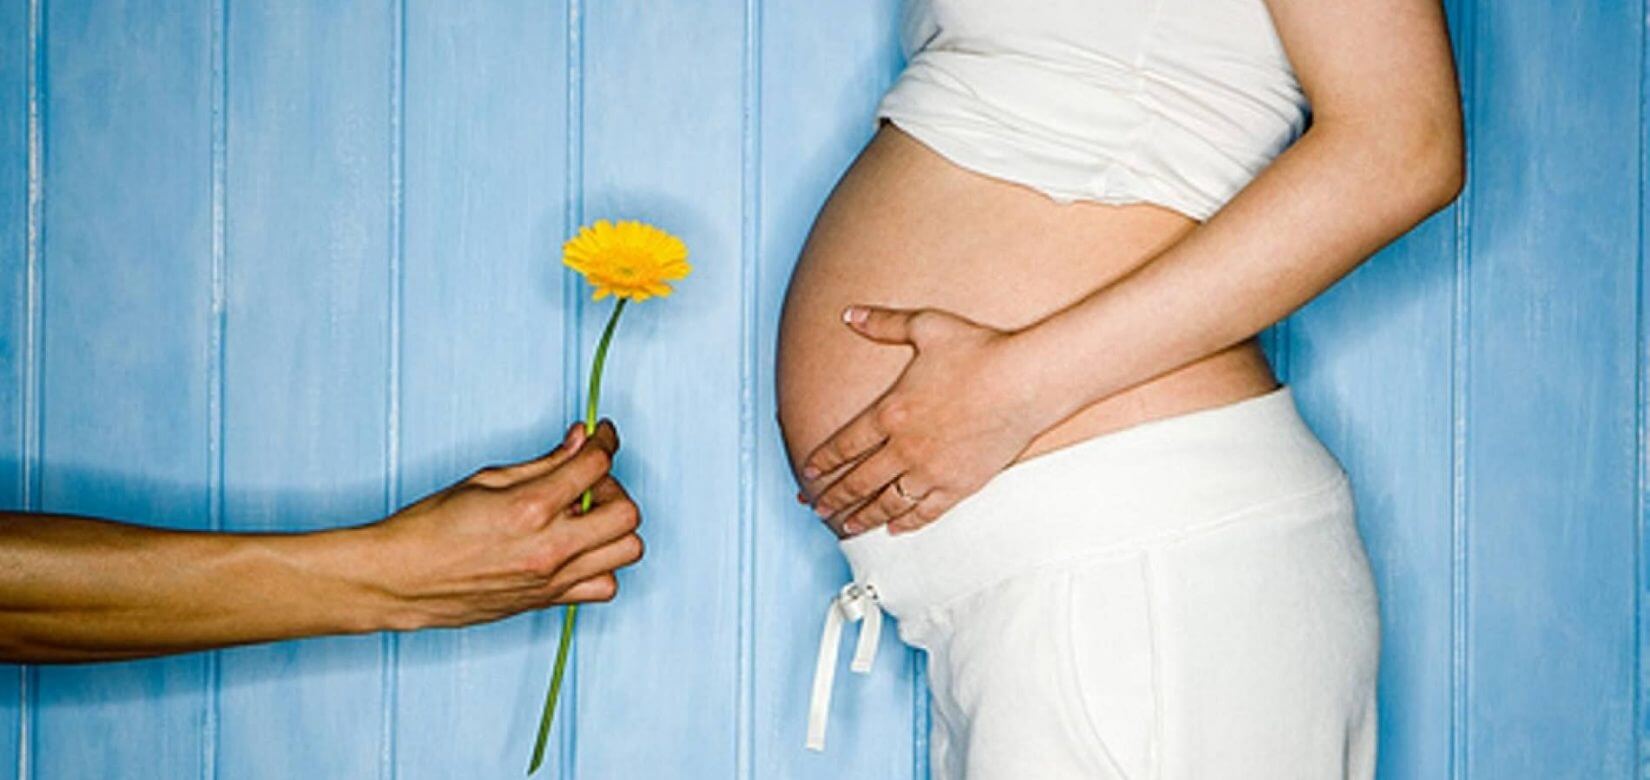 Εξωσωματική γονιμοποίηση: Οι πιο συχνές ερωτήσεις (Μέρος Α')